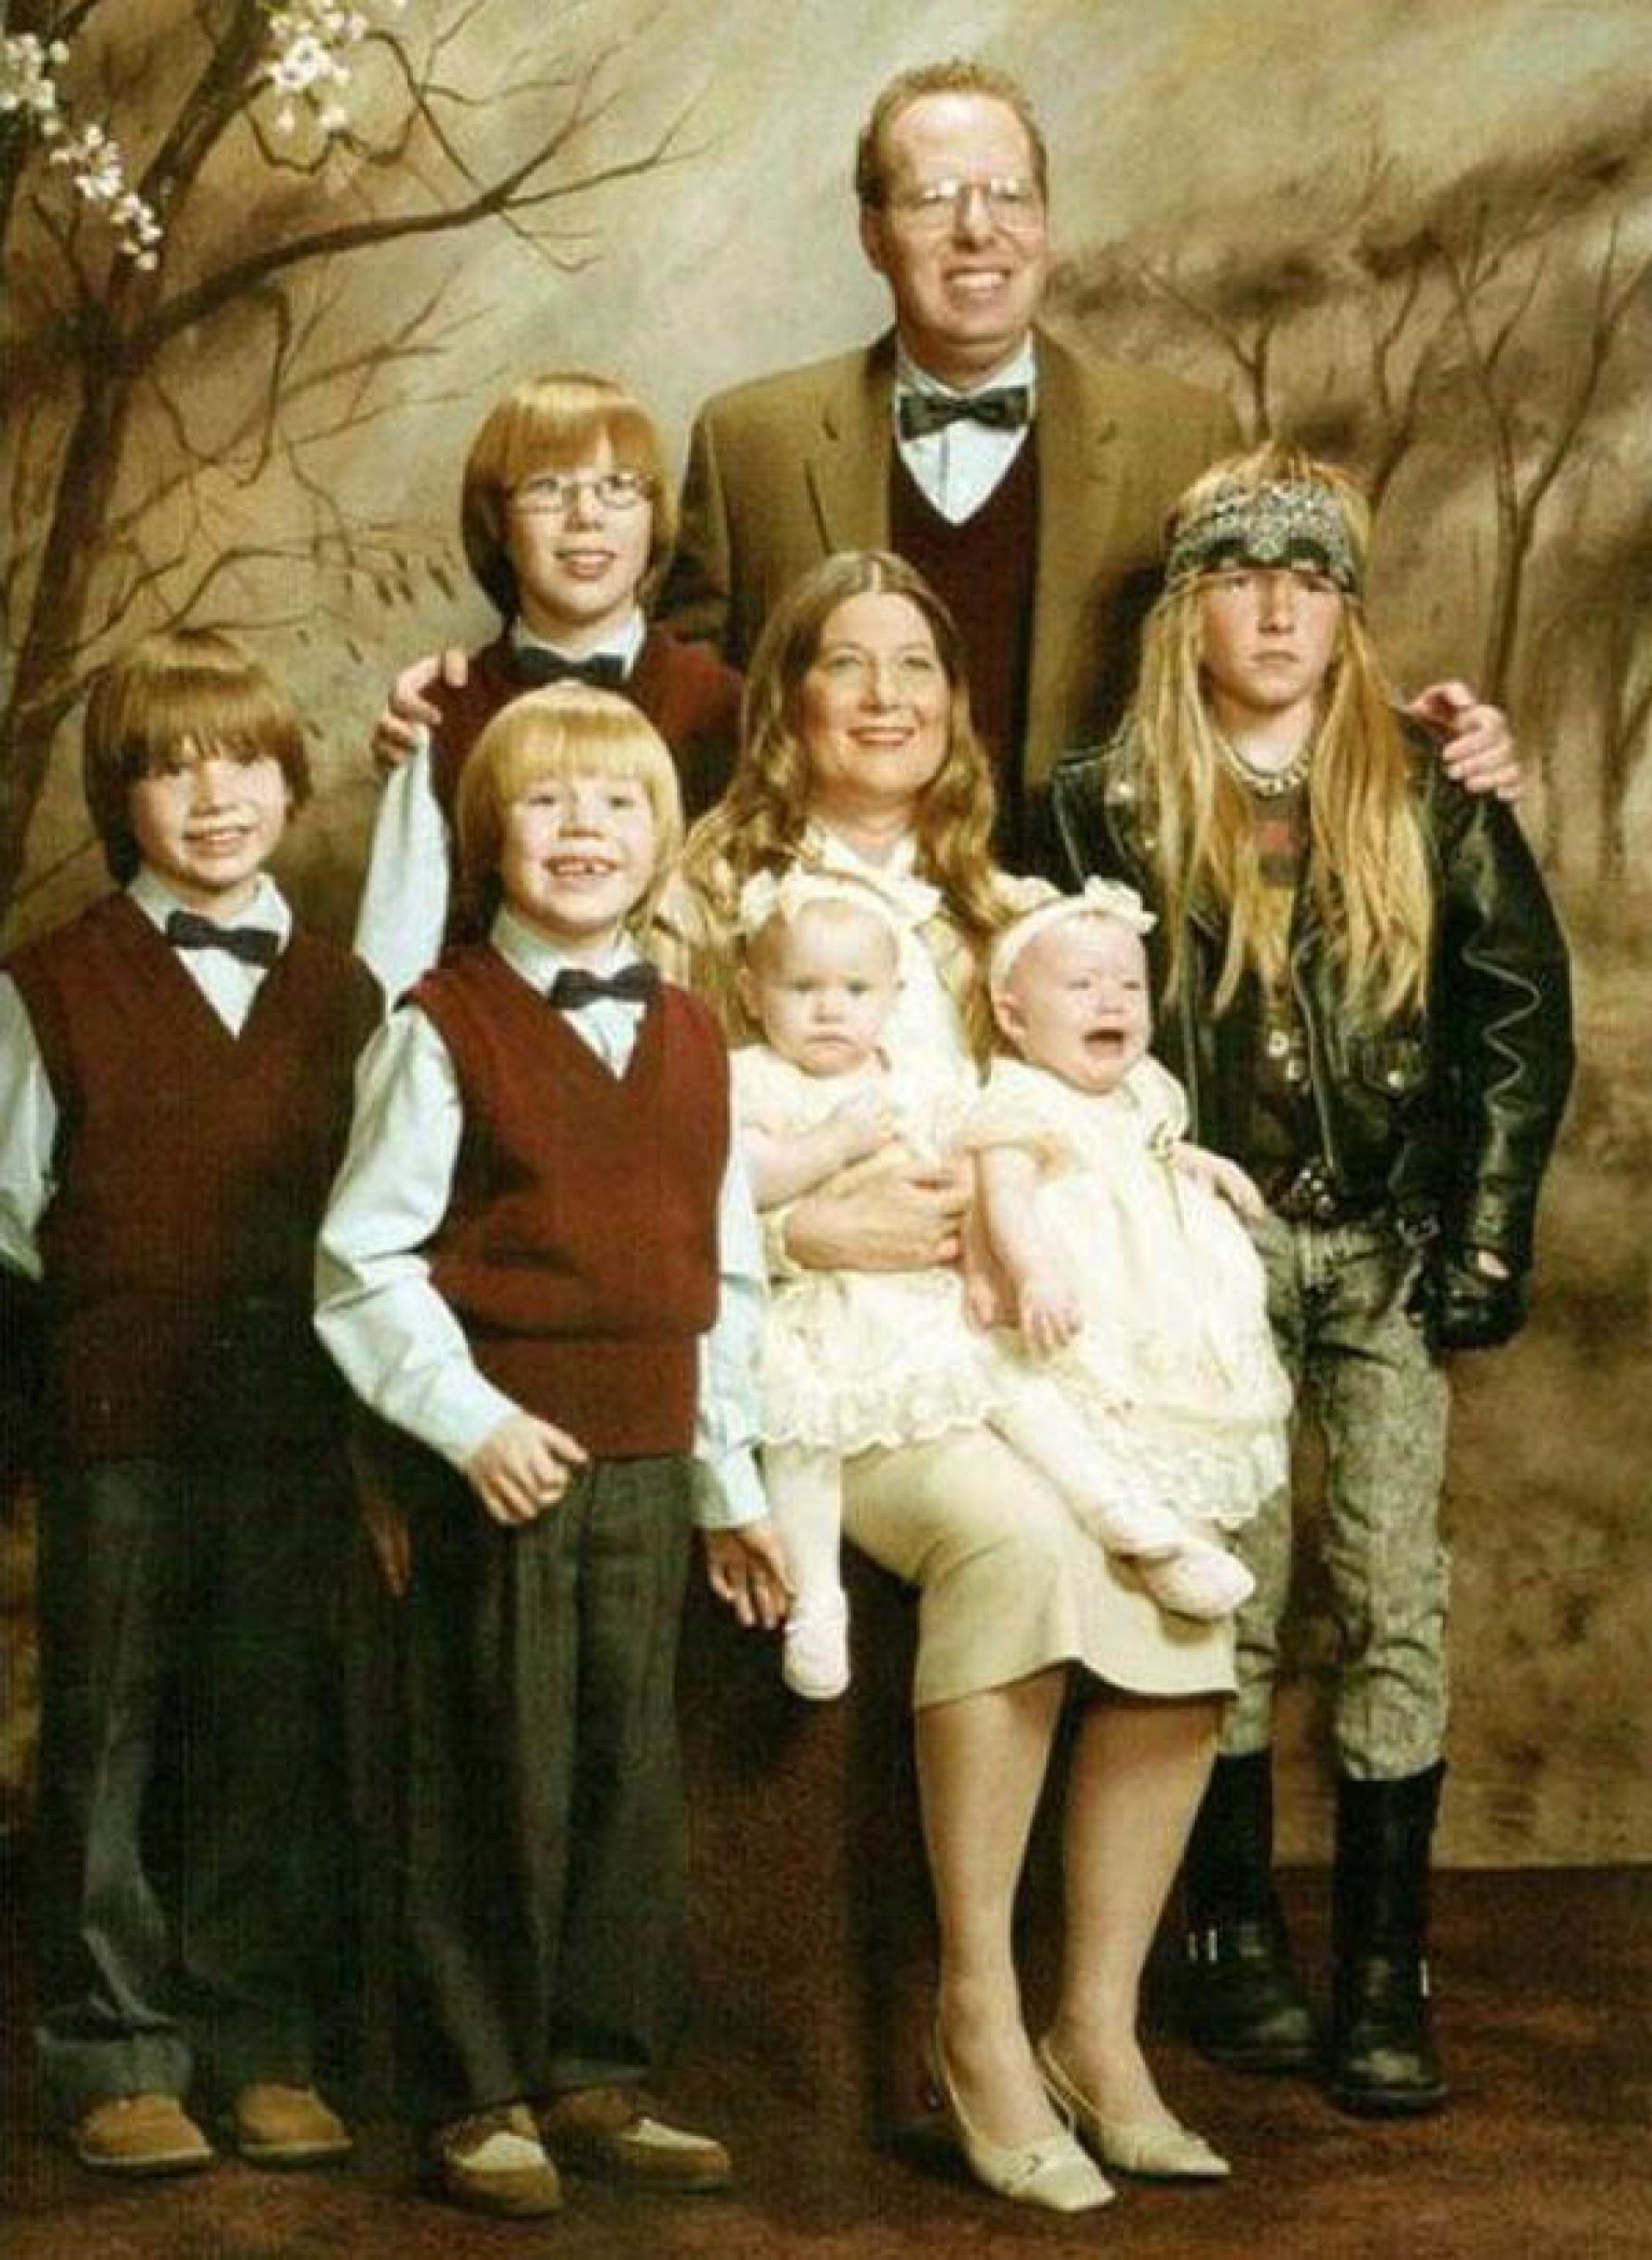 Weird family